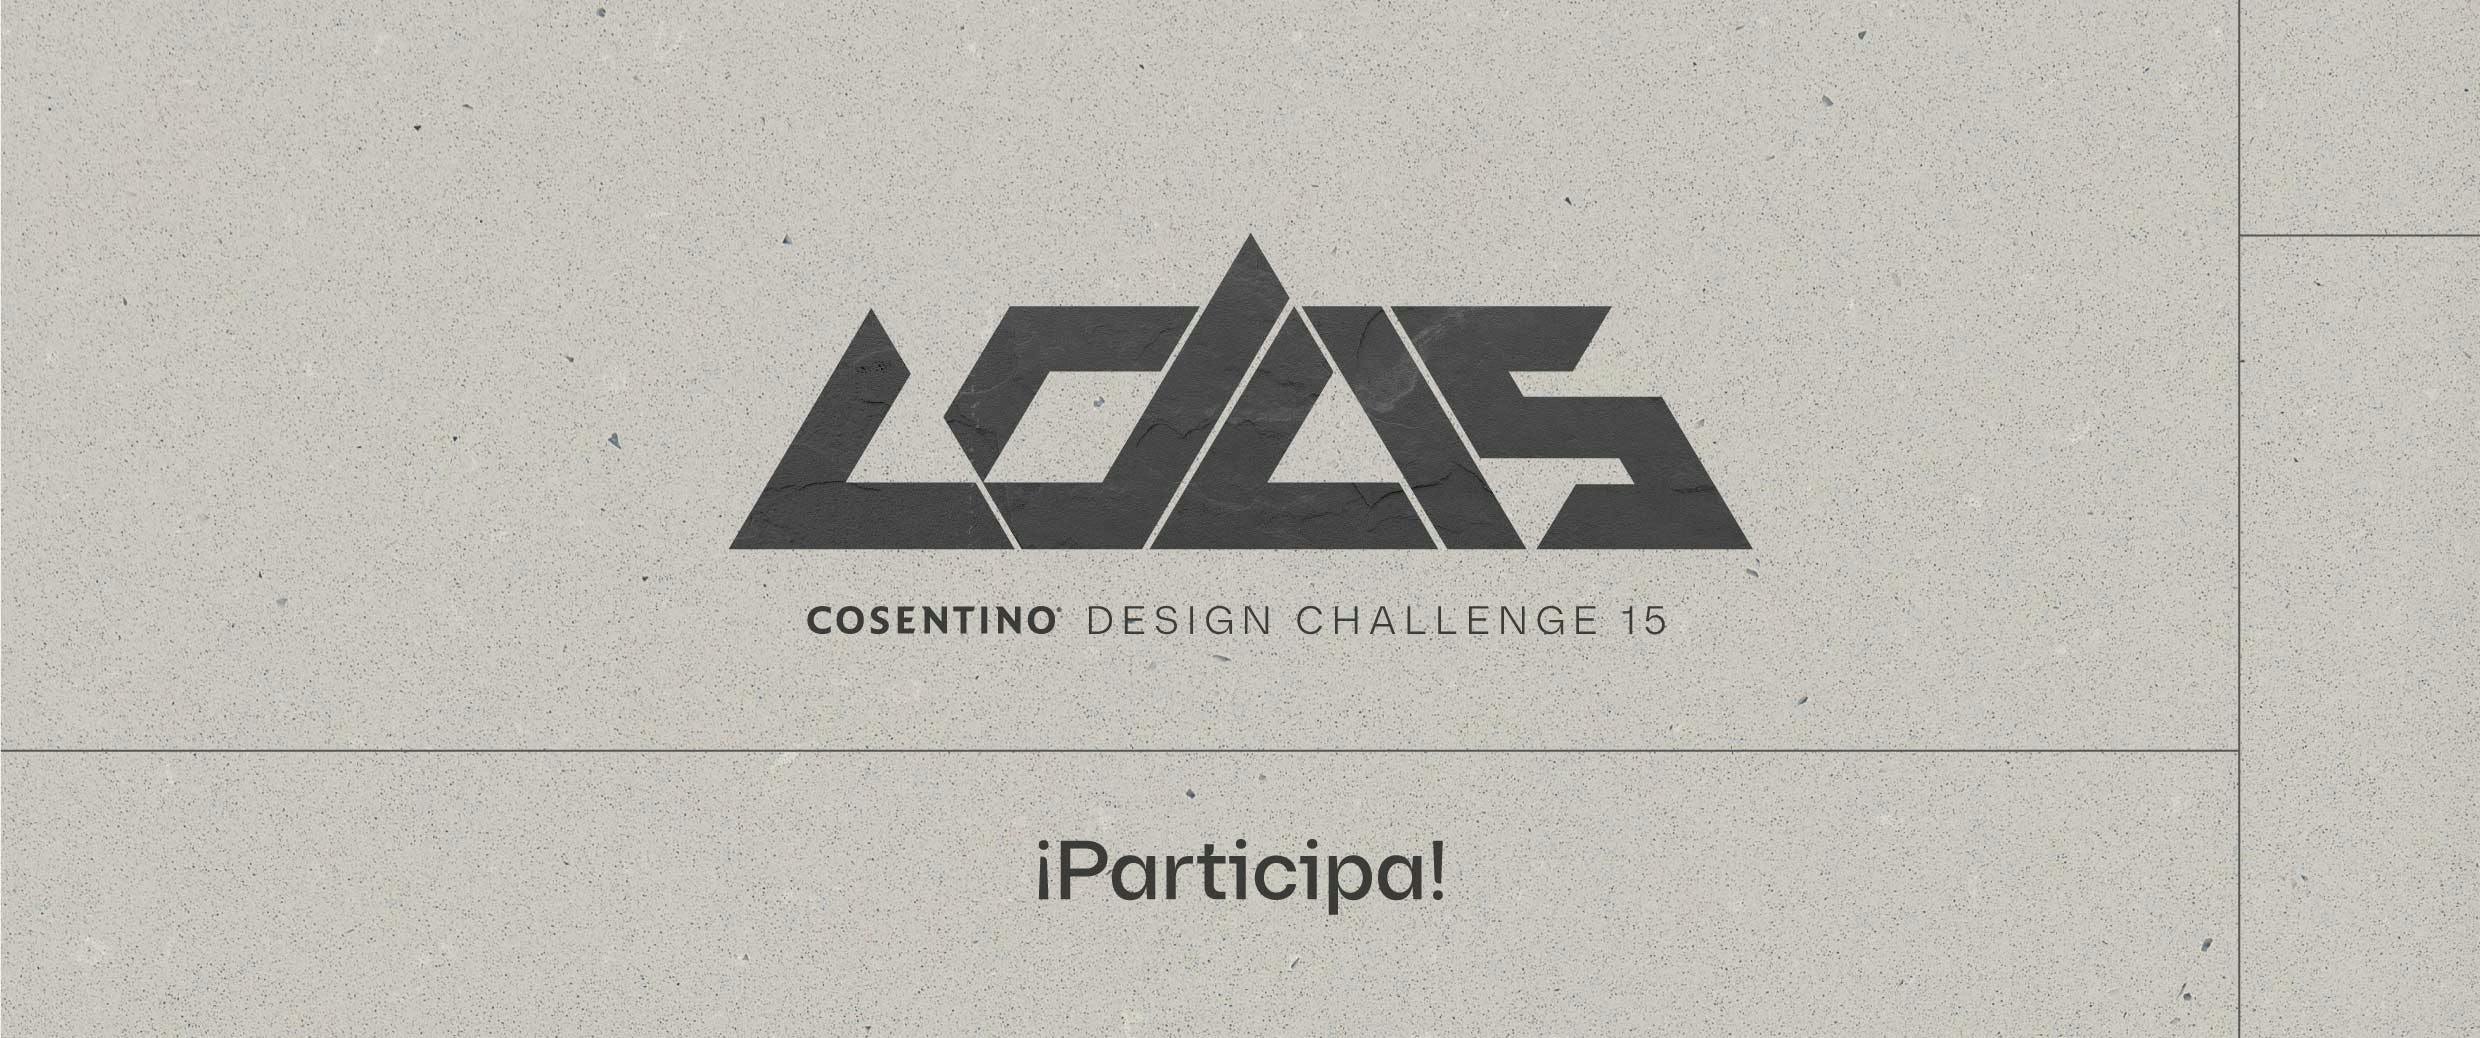 Numéro d'image 32 de la section actuelle de Cosentino présente les thèmes du Cosentino Design Challenge 15 de Cosentino France